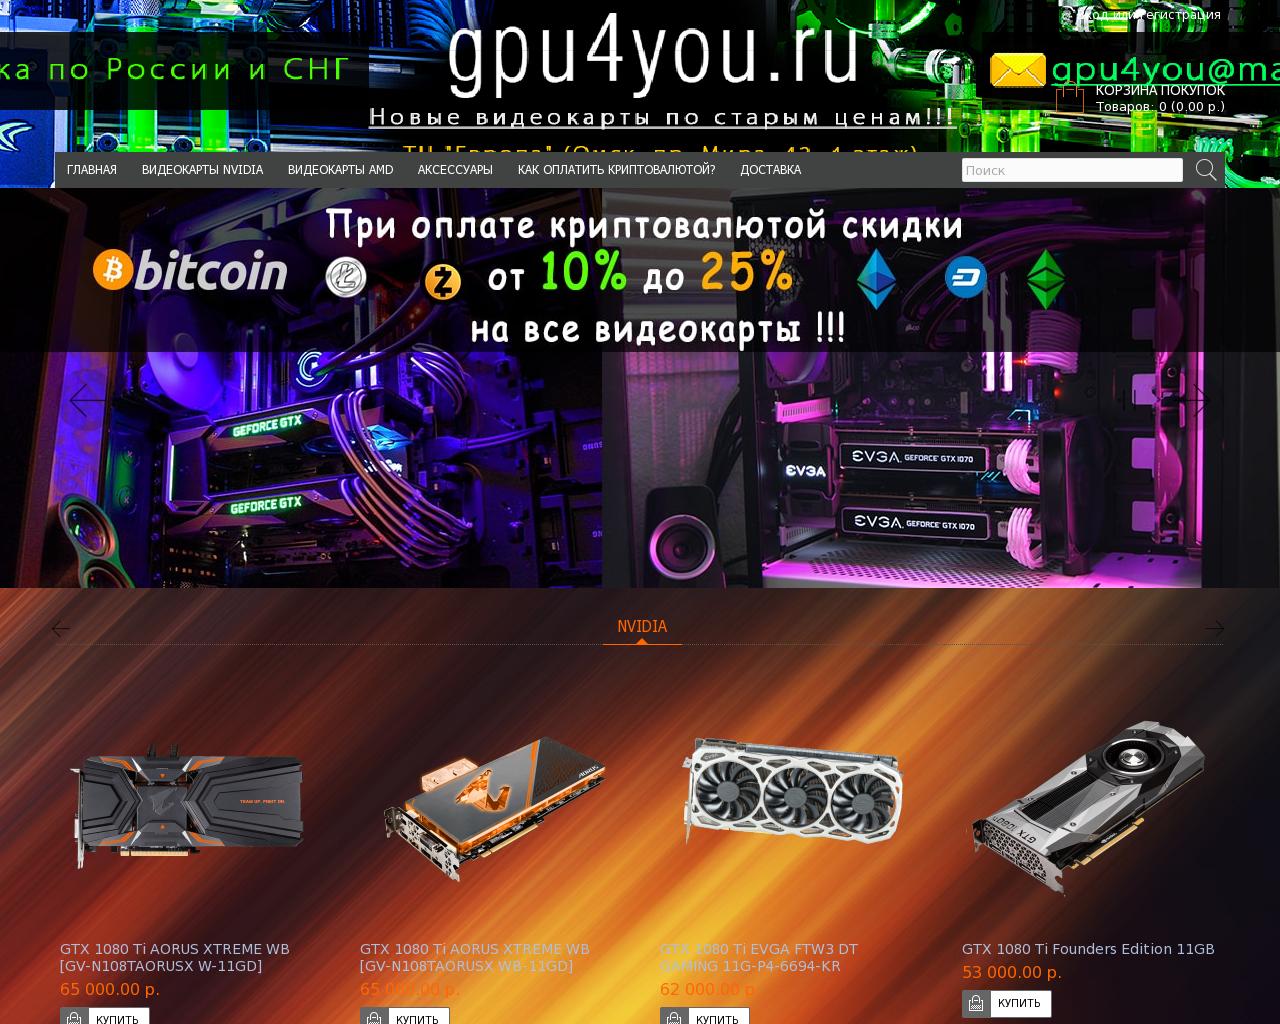 Изображение сайта gpu4you.ru в разрешении 1280x1024